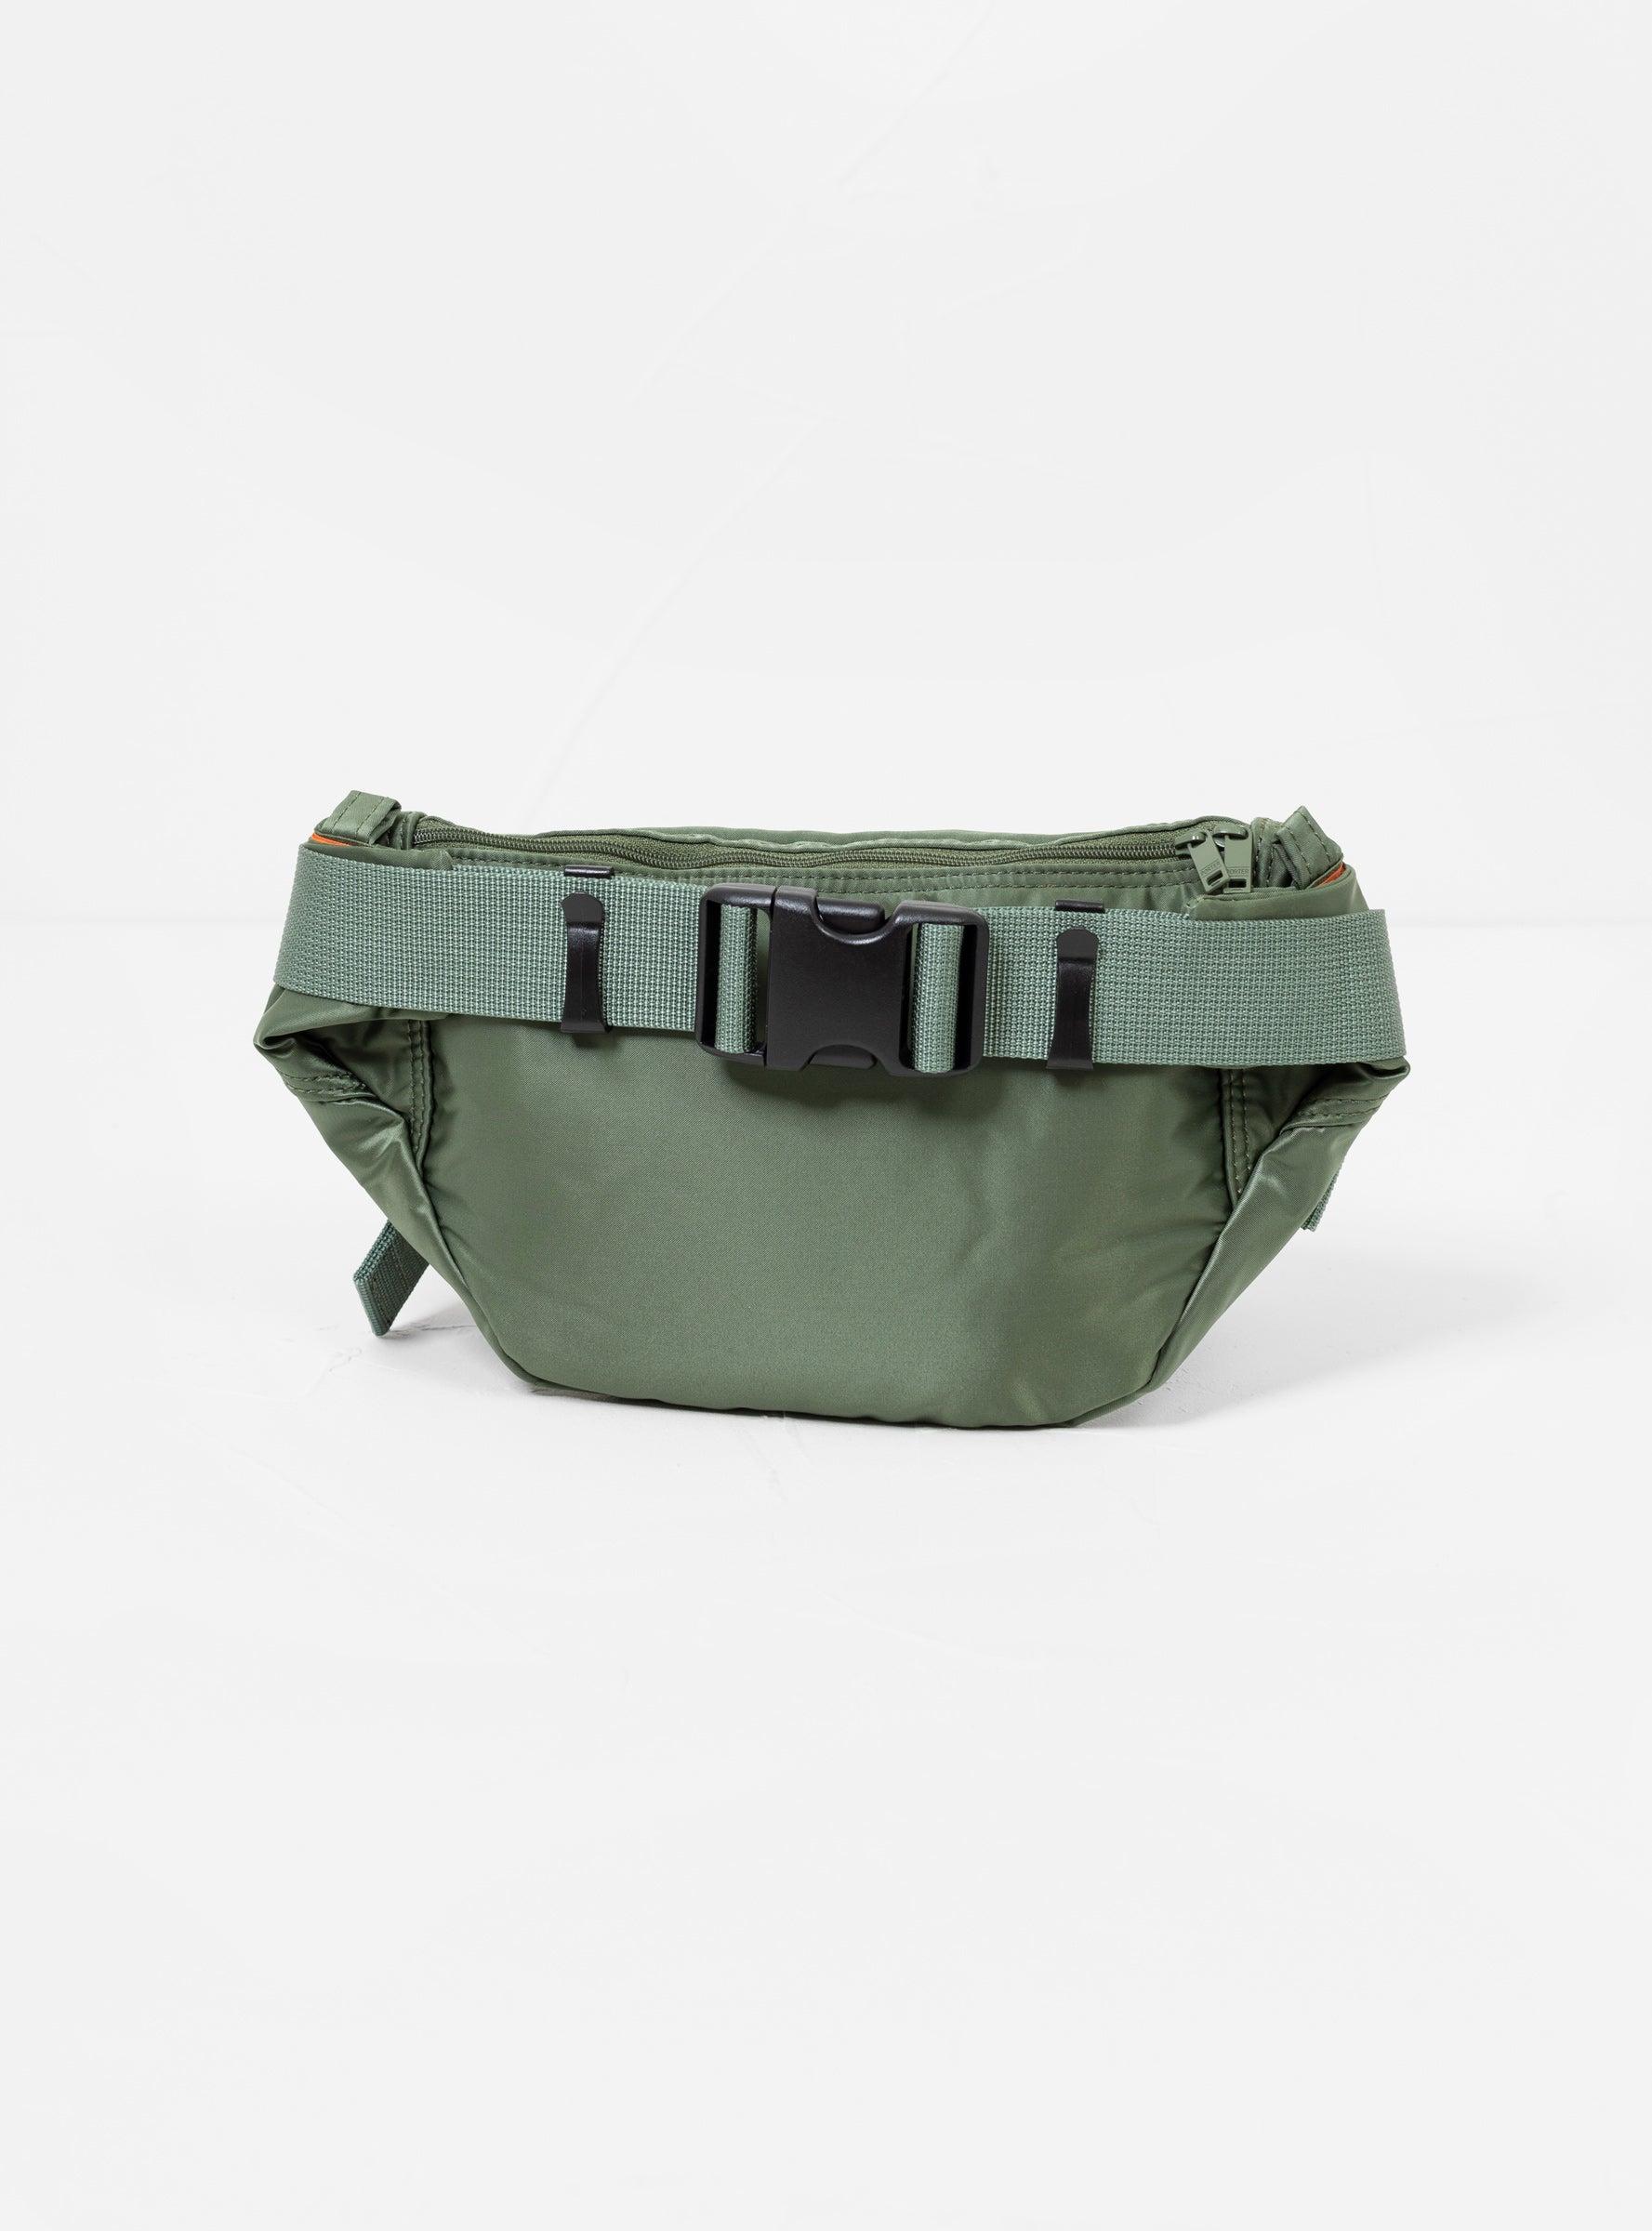 Porter-Yoshida and Co Synthetic Tanker Small Waist Bag Sage Green 